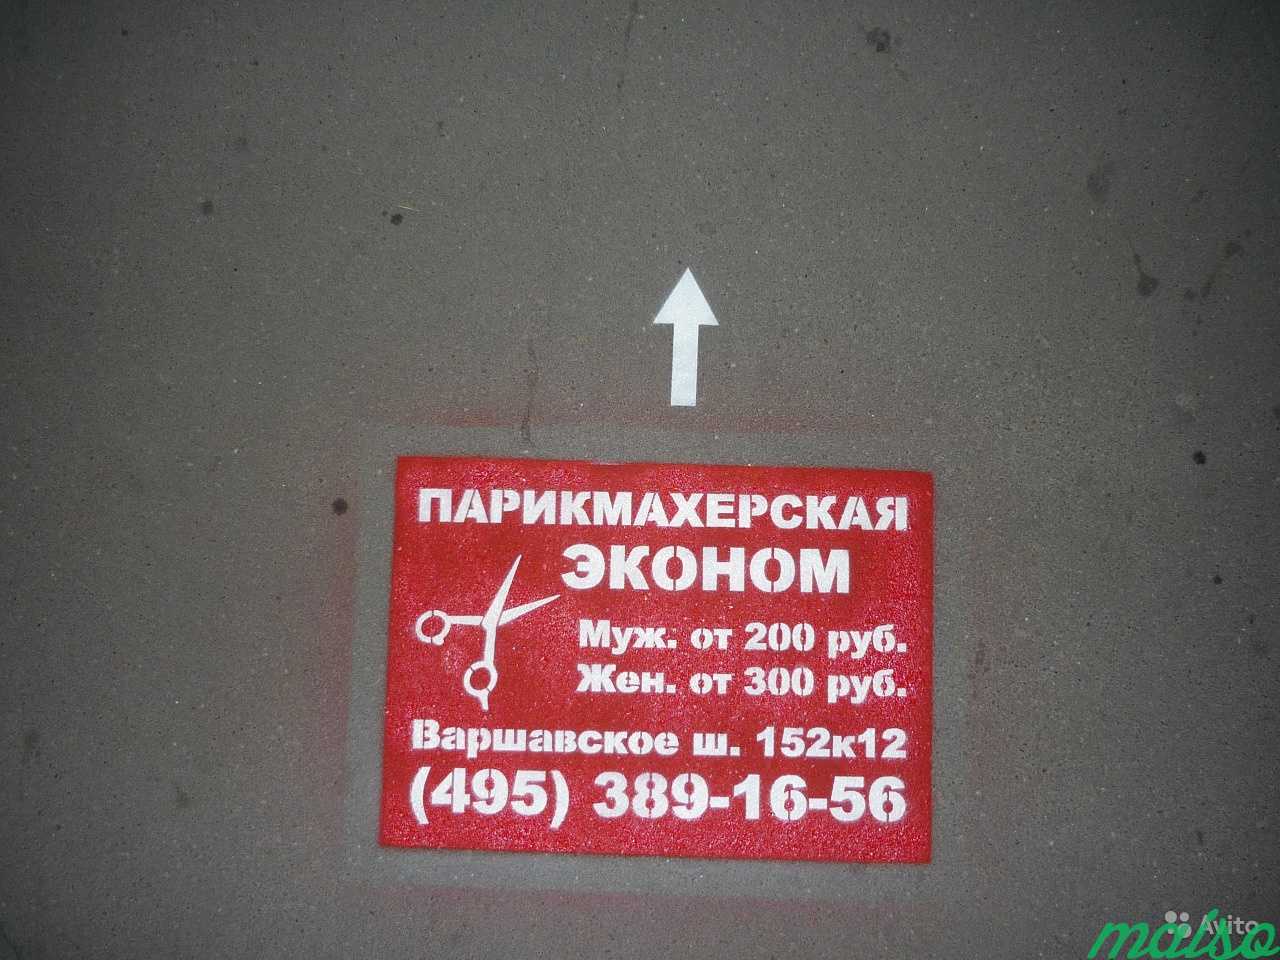 Реклама на асфальте в Москве. Фото 3